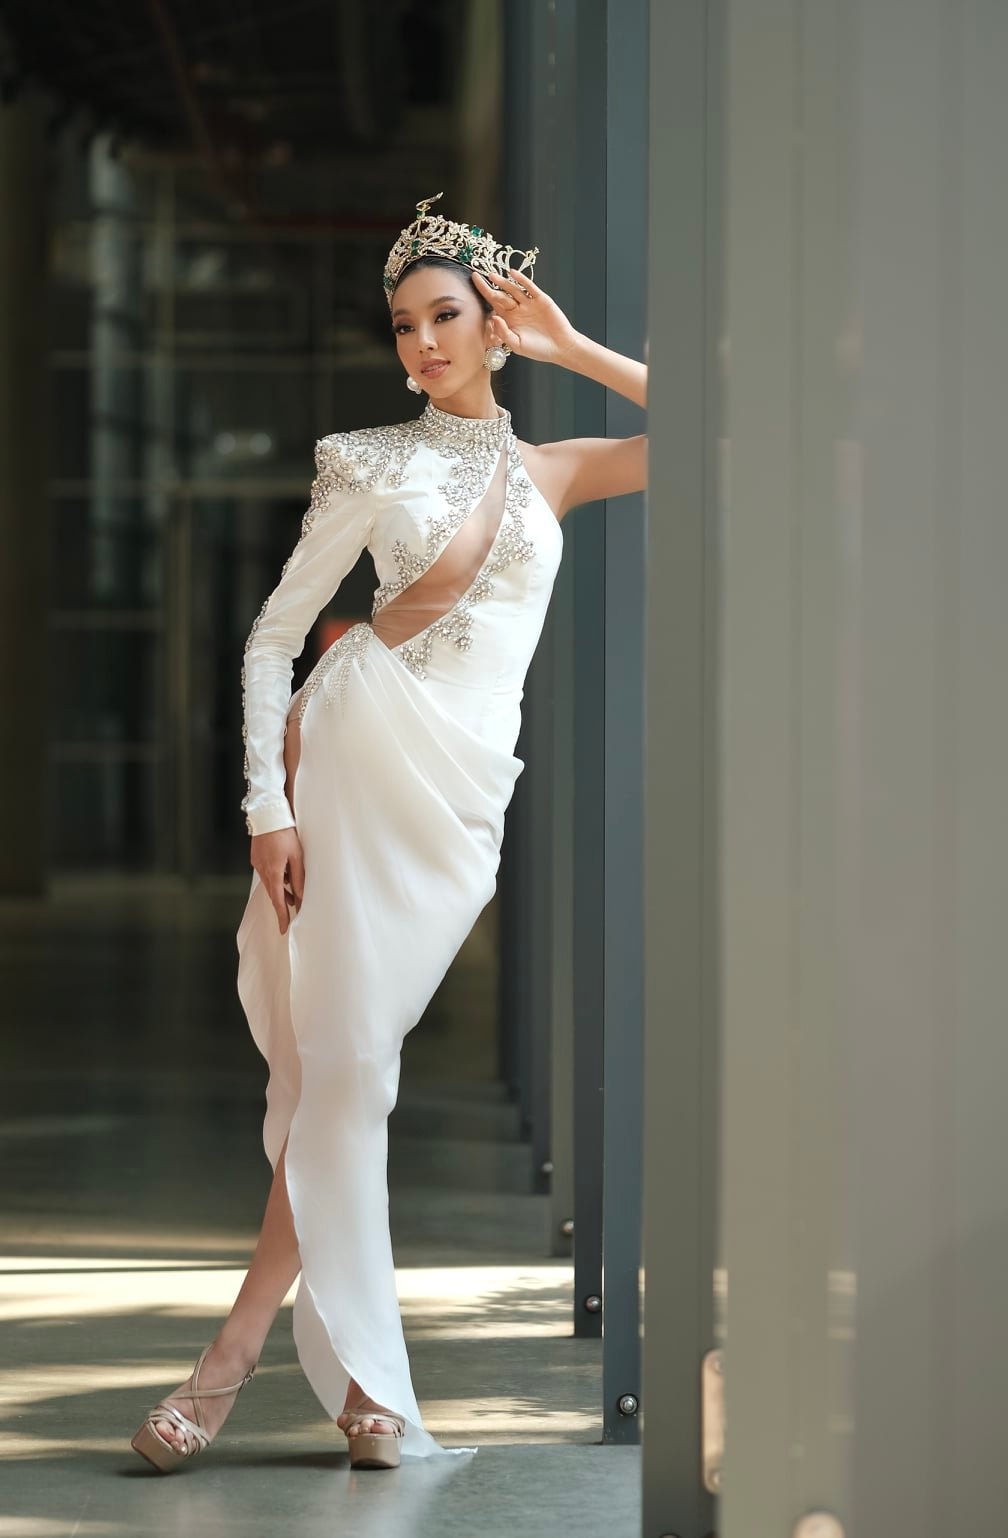 Chiếc váy được thiết kế rất tinh tế đến từ NTK Tăng Thành Công được Nguyễn Thúc Thuỳ Tiên diện trong buổi truyền thông thứ 2 sau chung kết